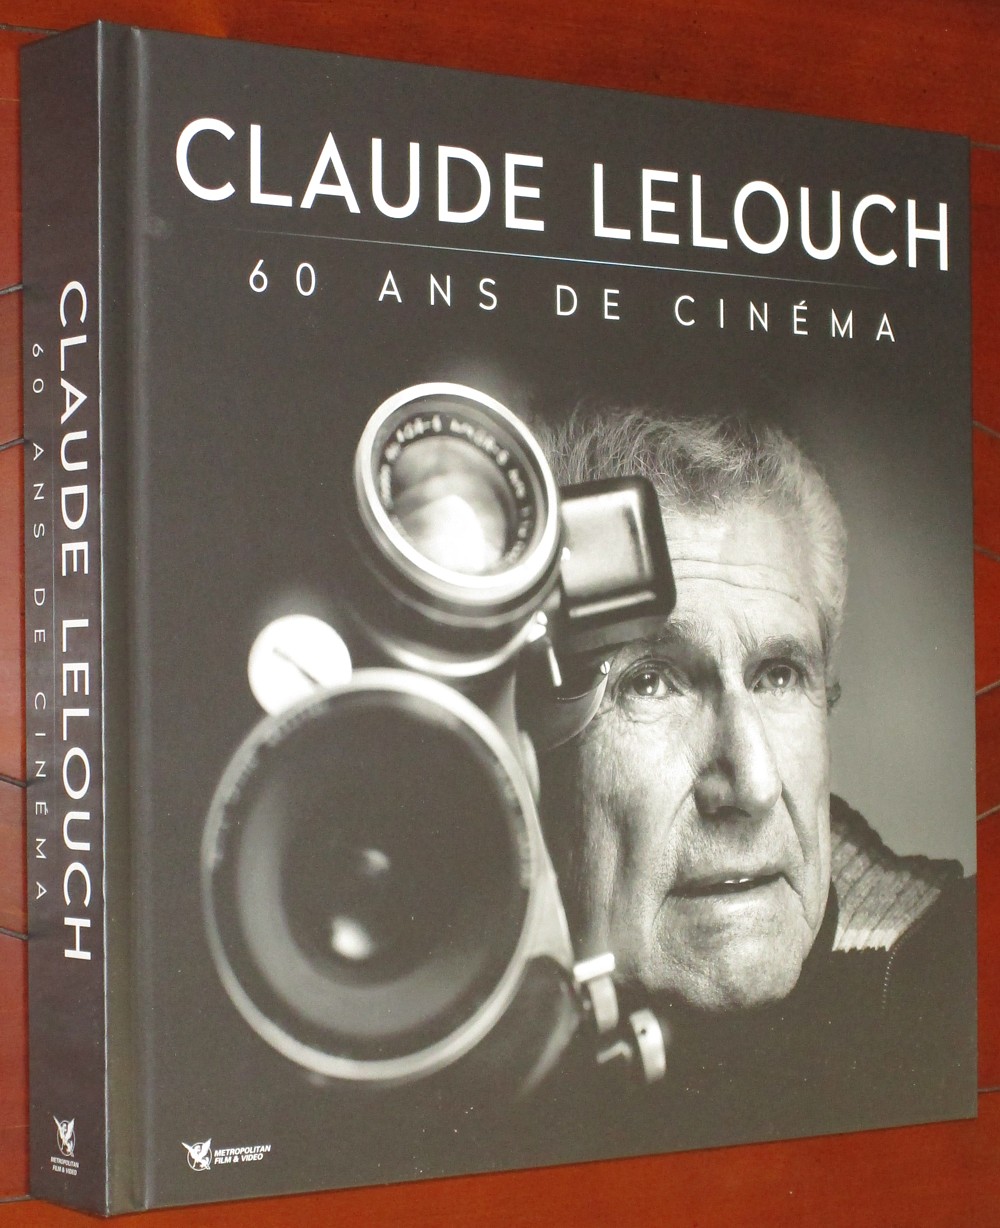 2022: CLAUDE LELOUCH 60 ANS DE CINEMA 006-cl12